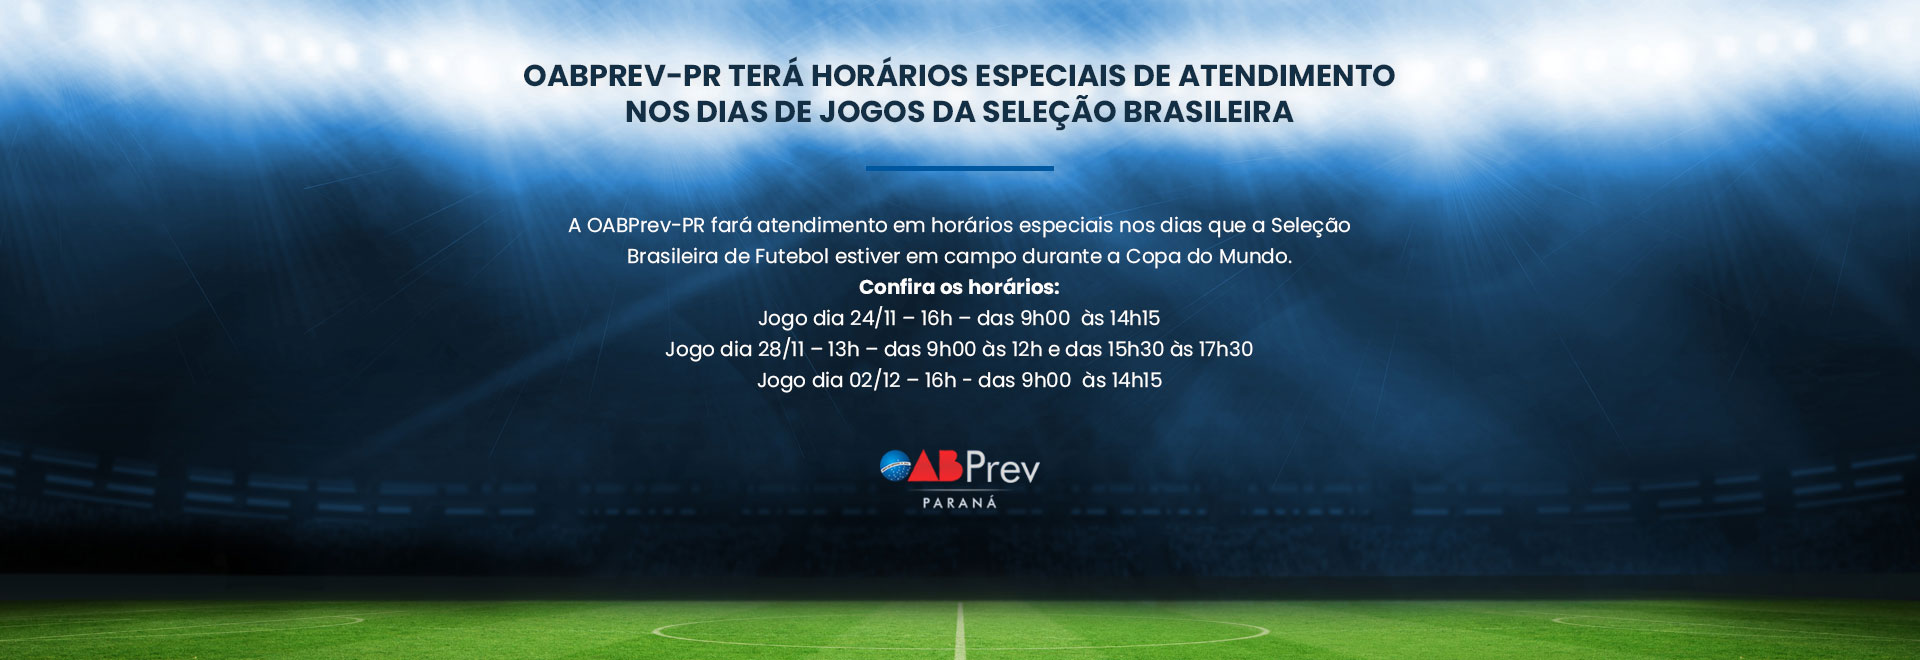 OABPrev-PR terá horários especiais de atendimento nos dias de jogos da Seleção Brasileira